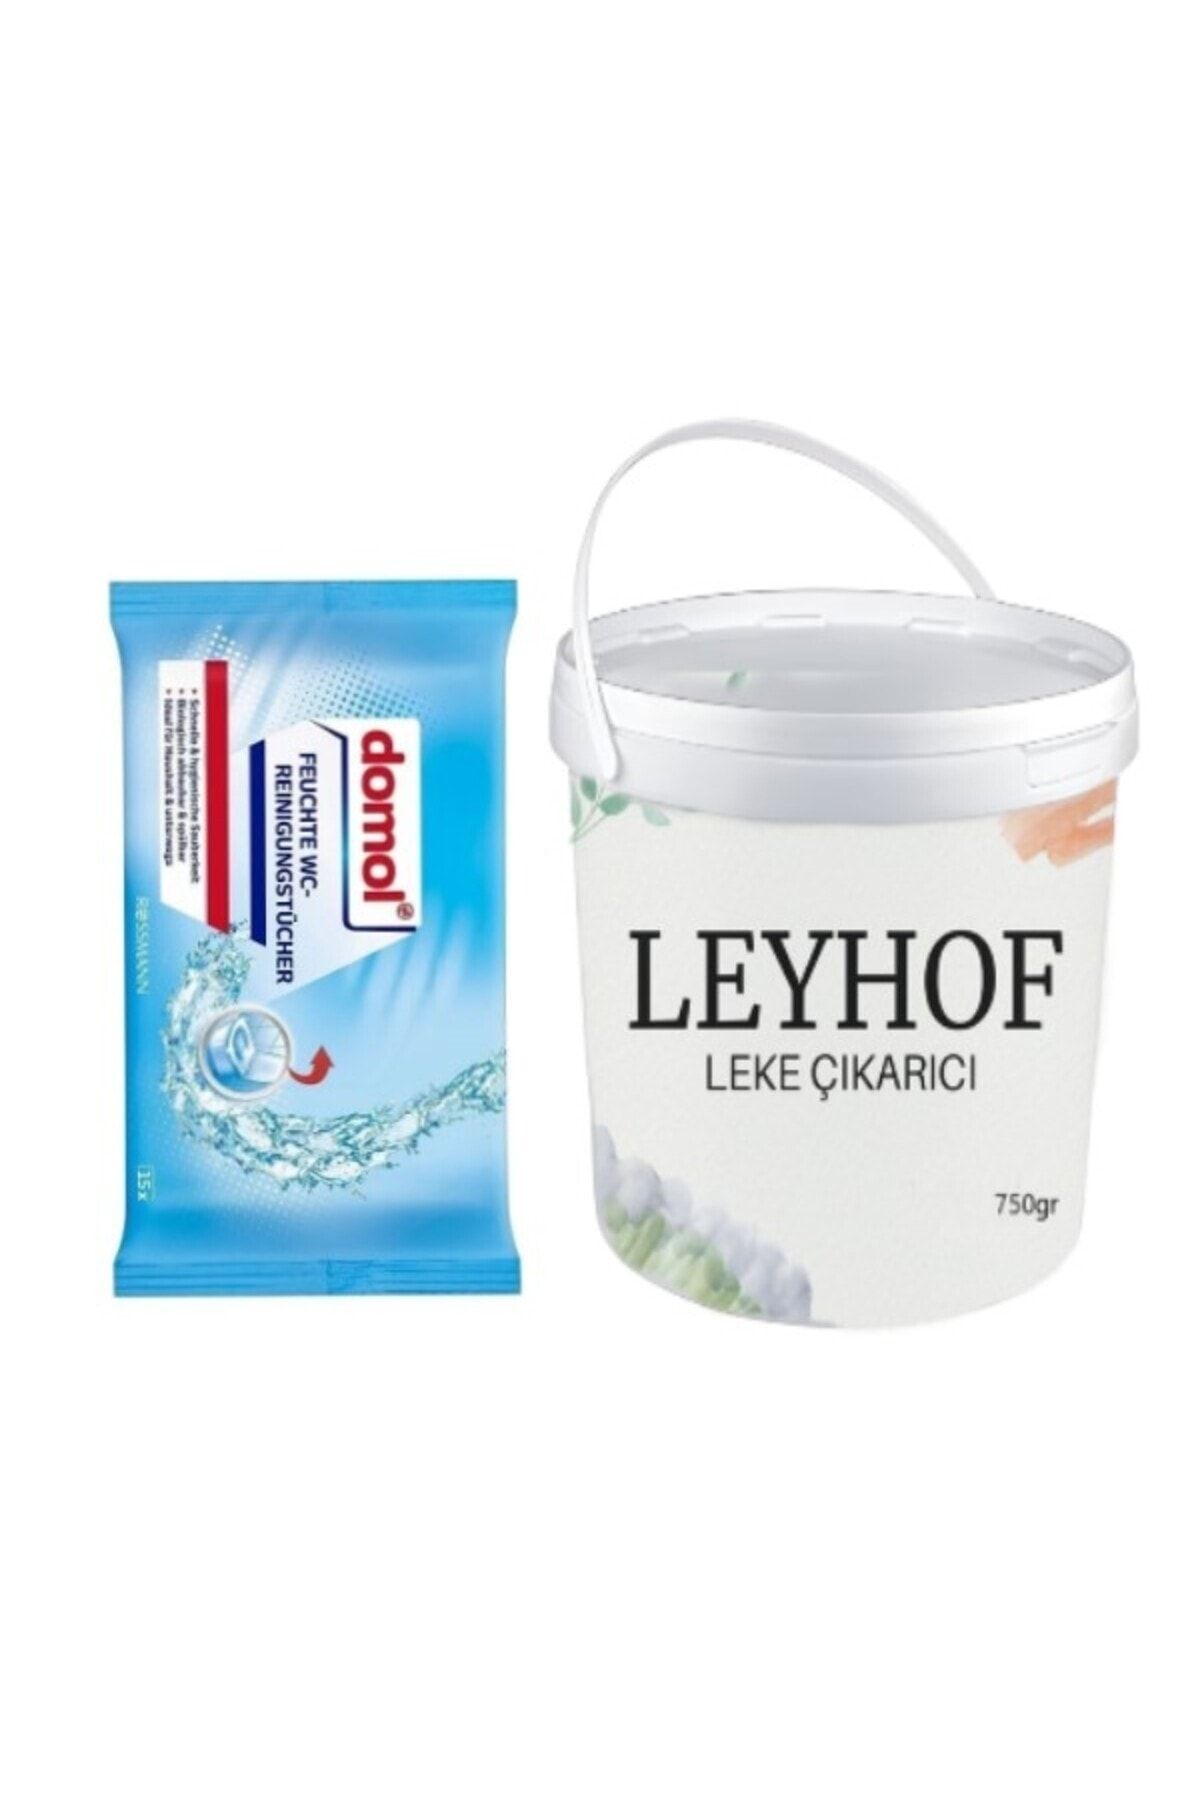 Domol Islak Temizlik Bezi Tuvalet Hijyeni İçin 15 Adet + Leyhof Beyazlar için Leke Çıkarıcı Toz Oxi 750gr